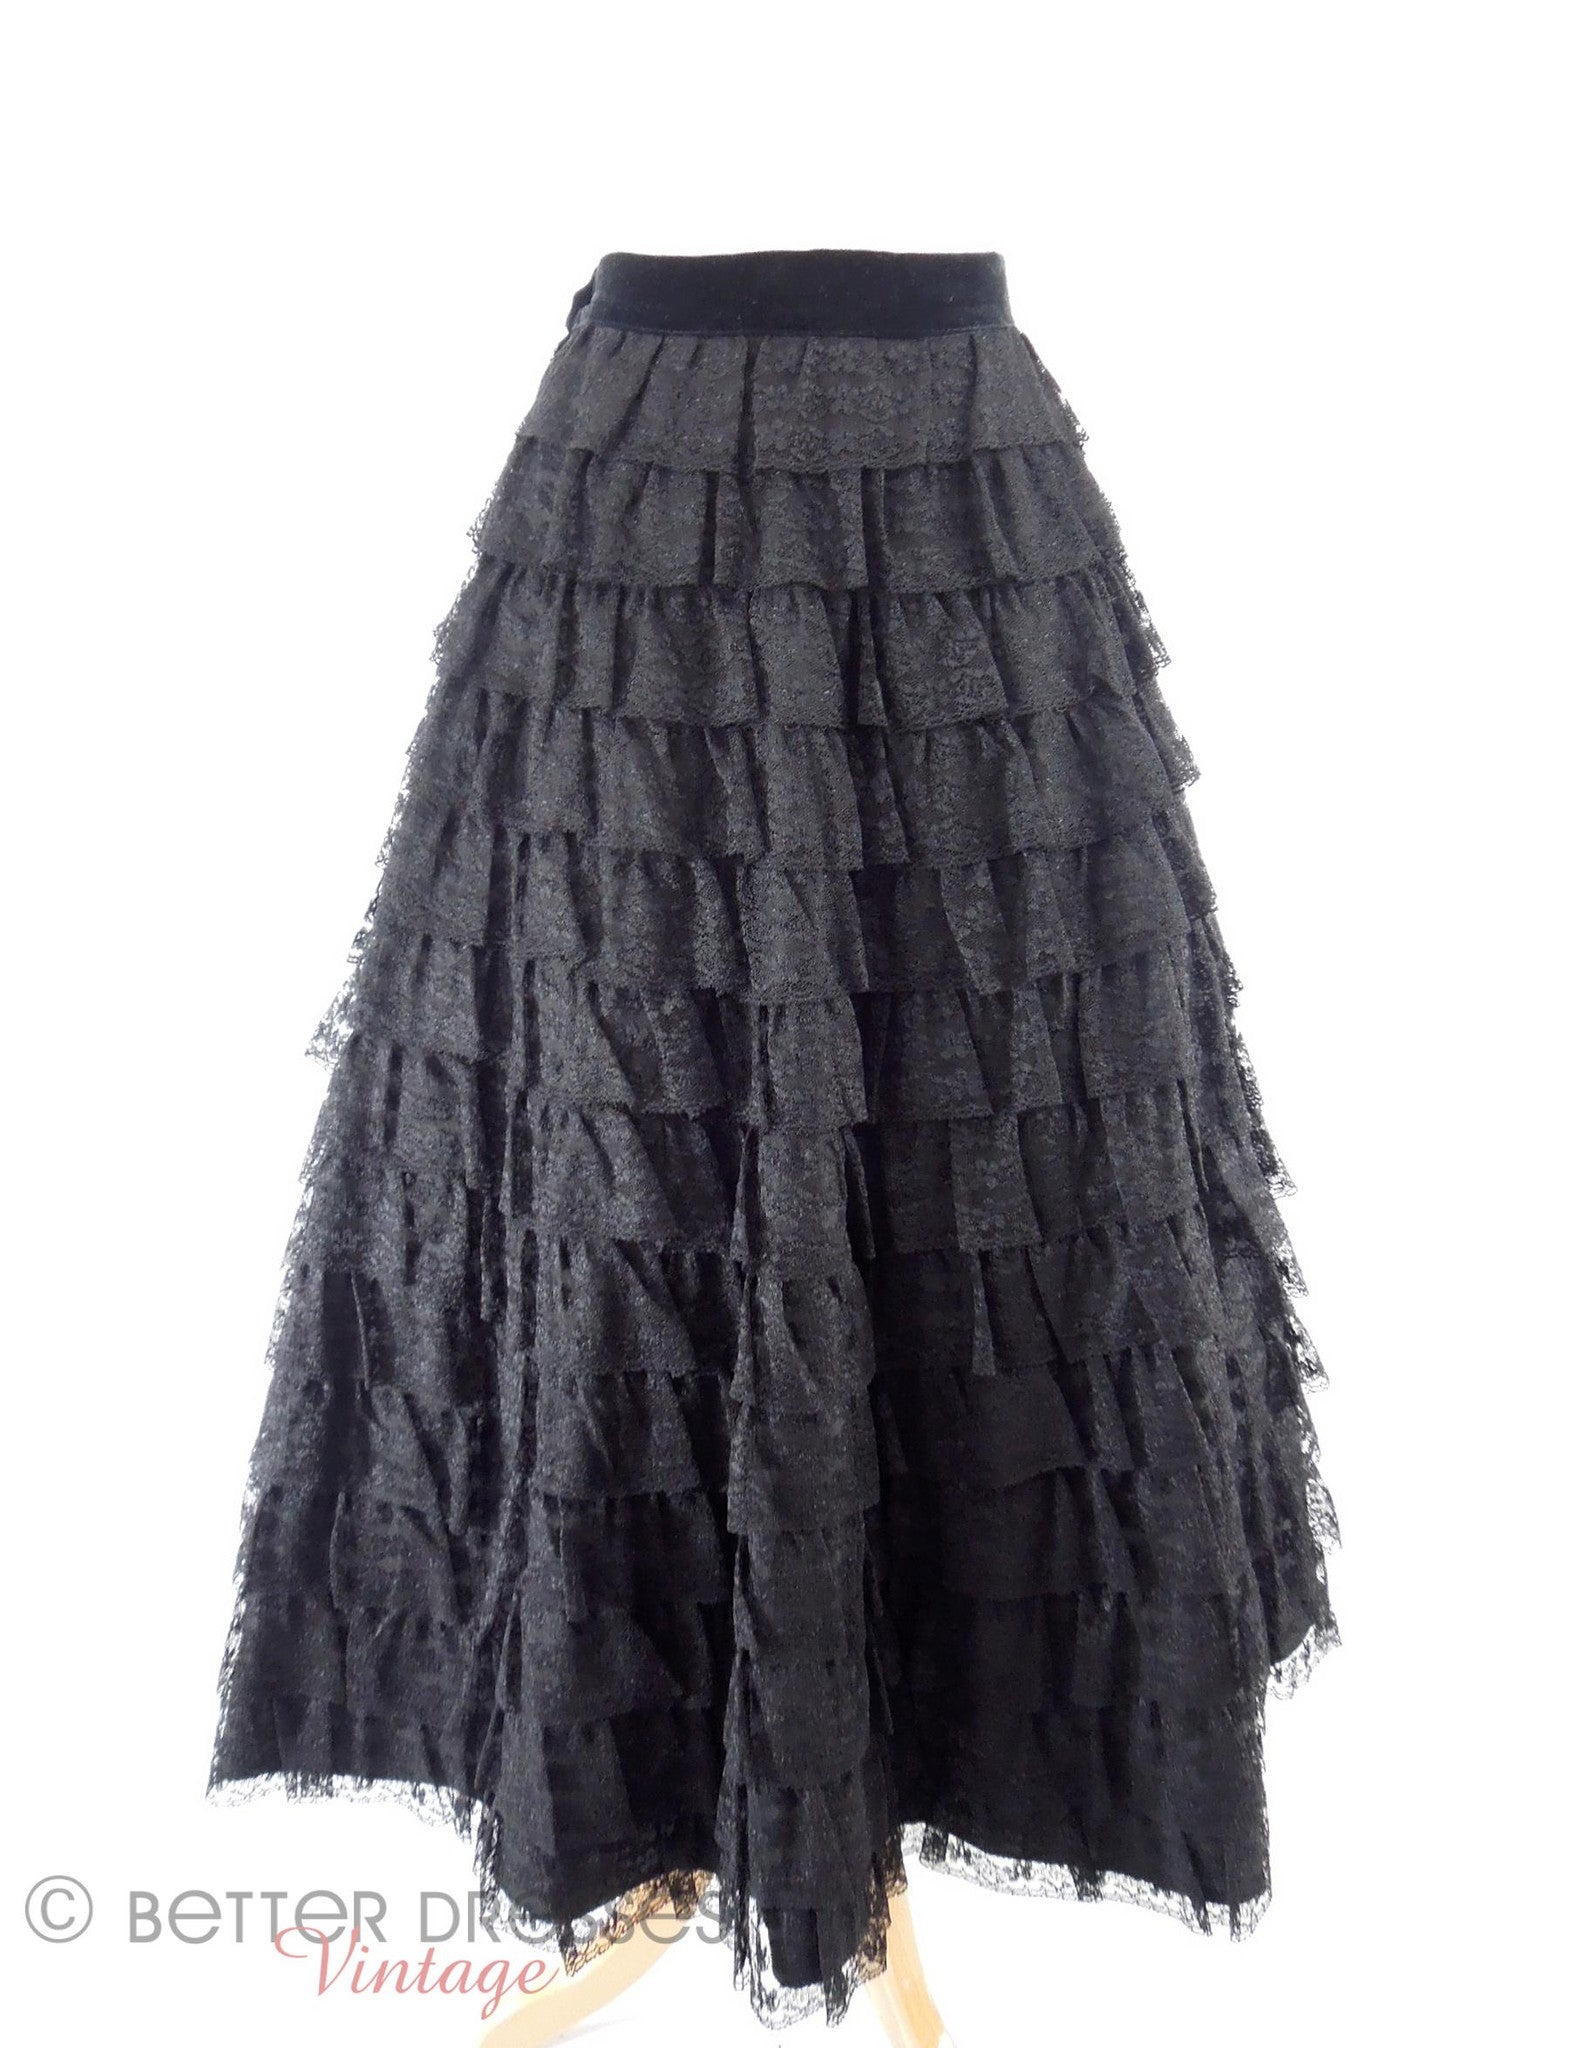 Vintage 40s or 50s Black Lace Full Skirt - sm – Better Dresses Vintage